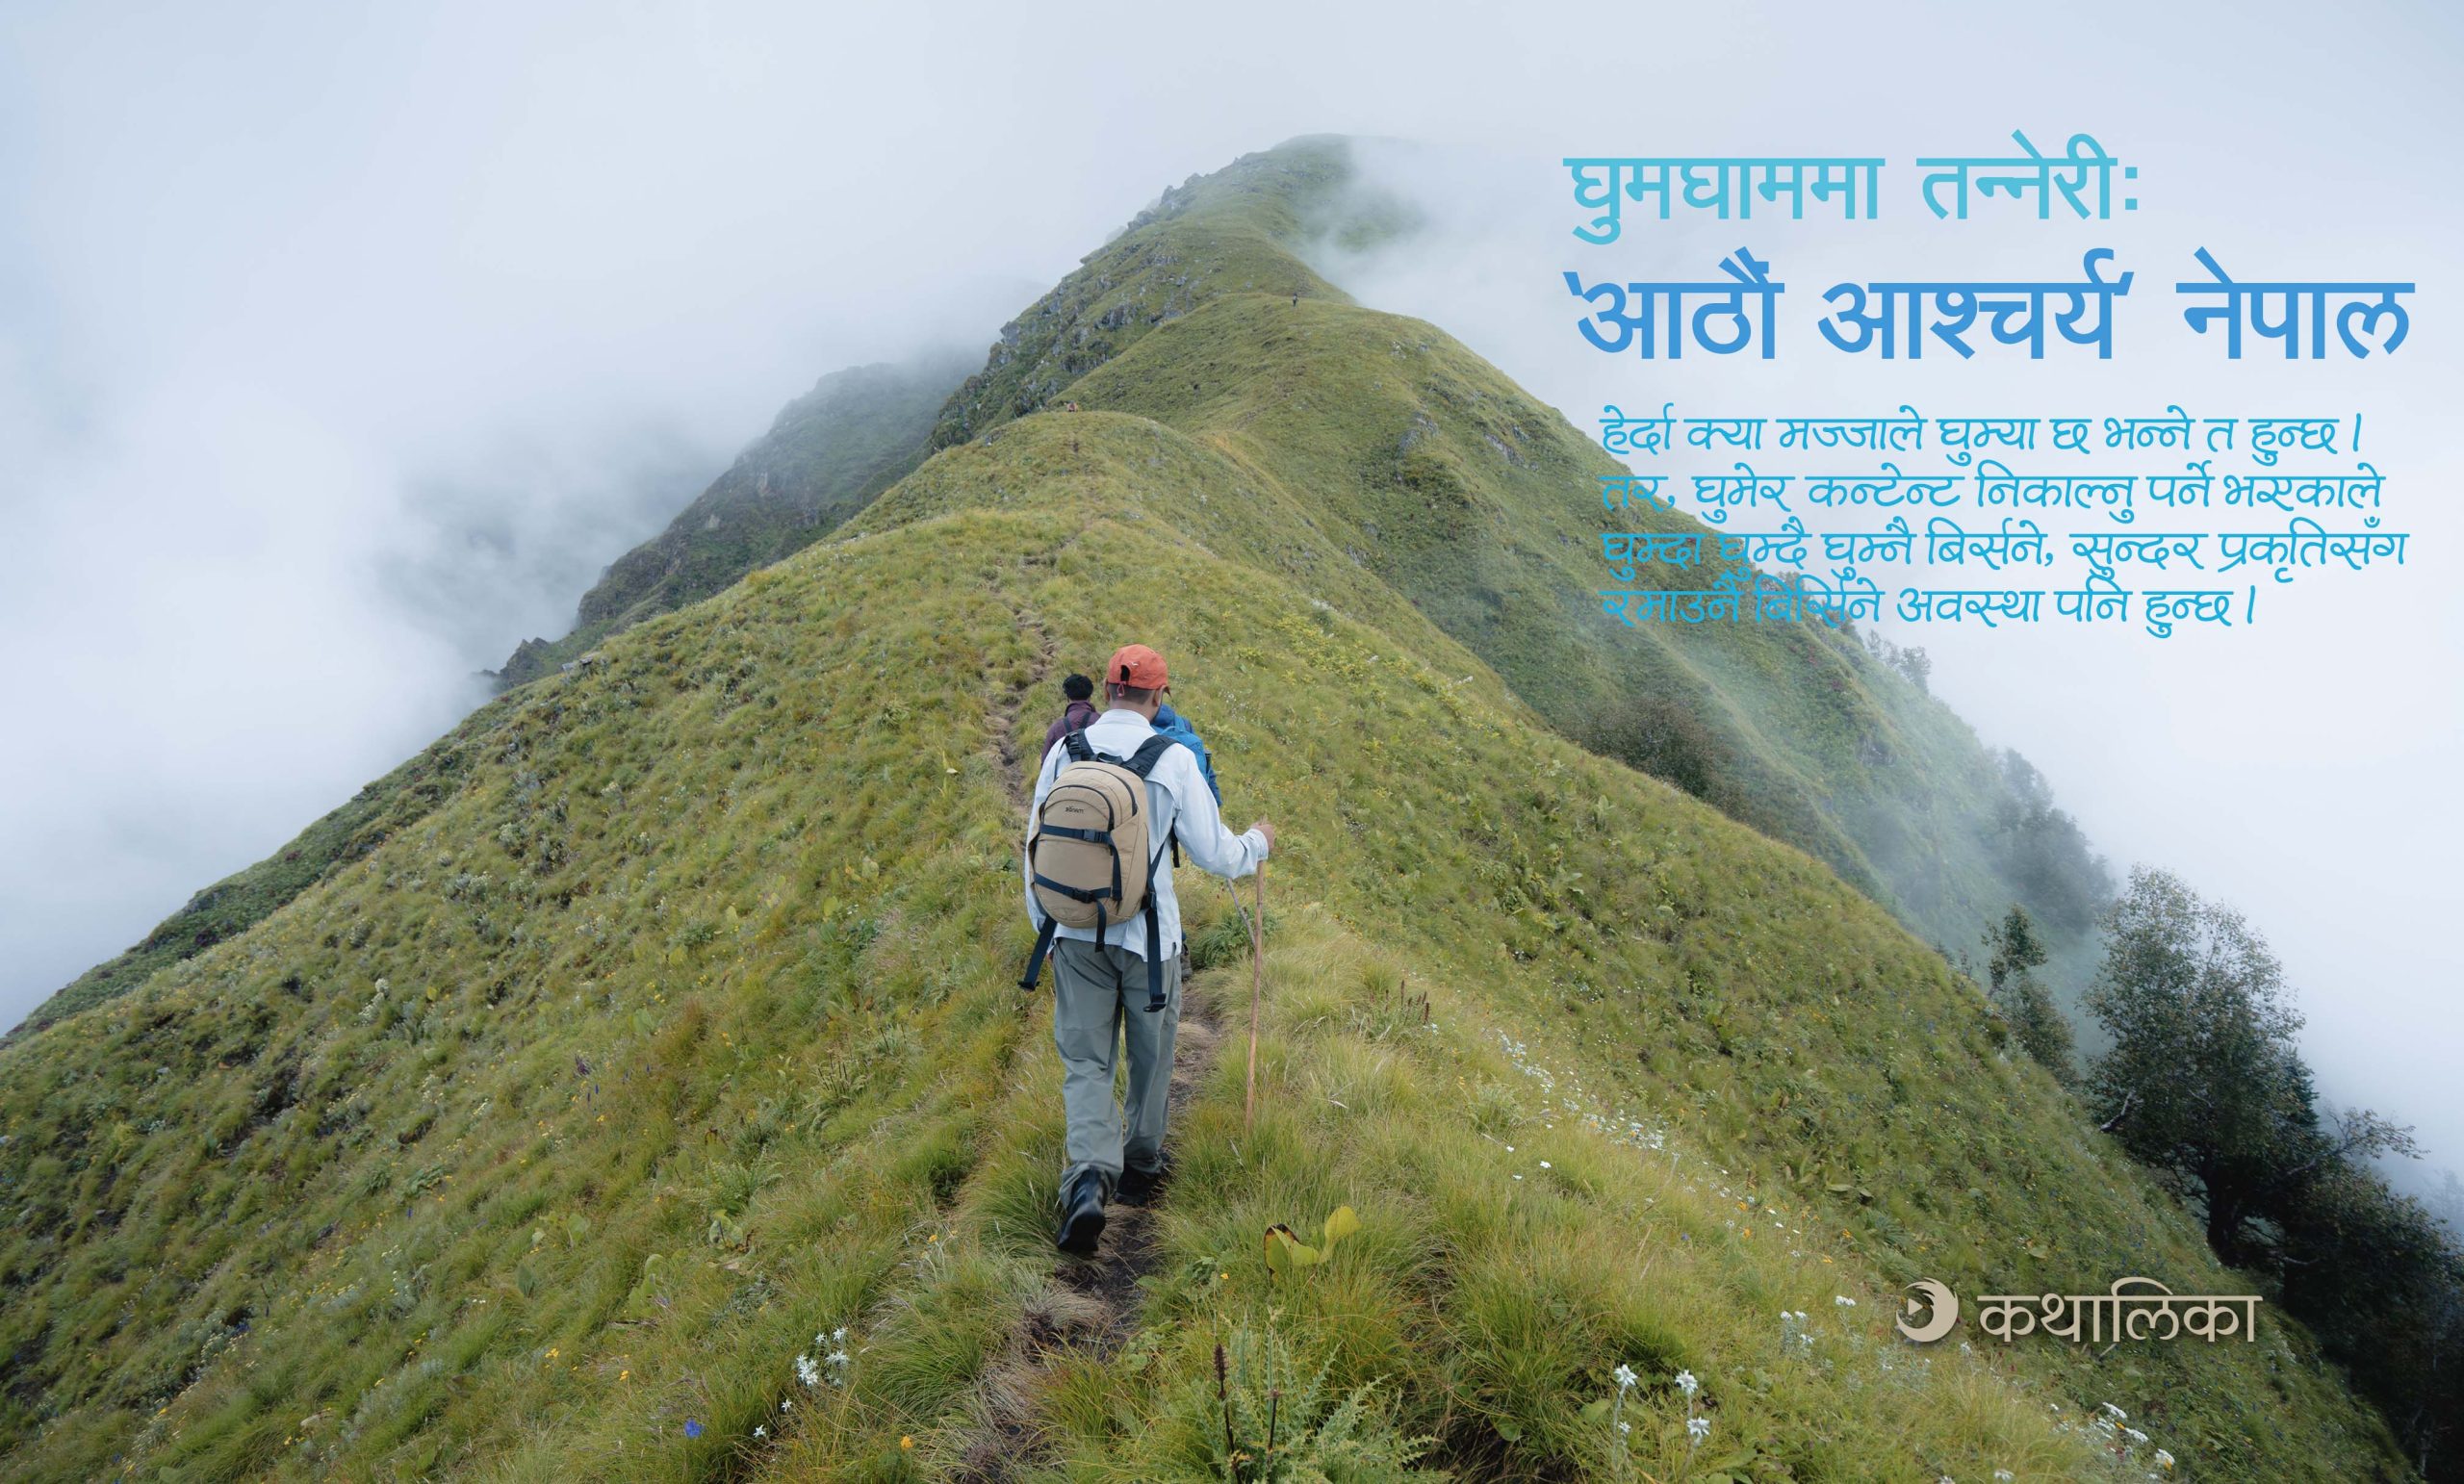  घुमघाममा तन्नेरीः ‘आठौं आश्चर्य’ नेपाल